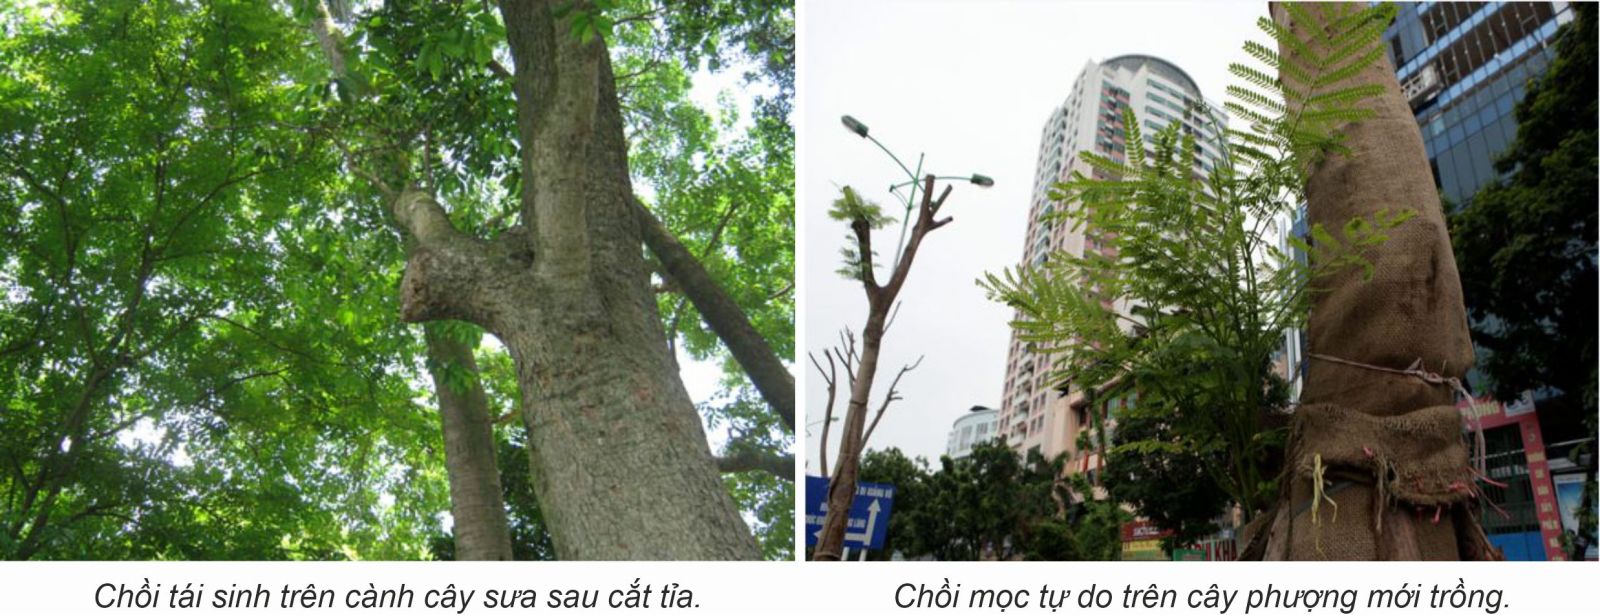 Quản lý cây xanh phù hợp với hạ tầng và kiến trúc đô thị